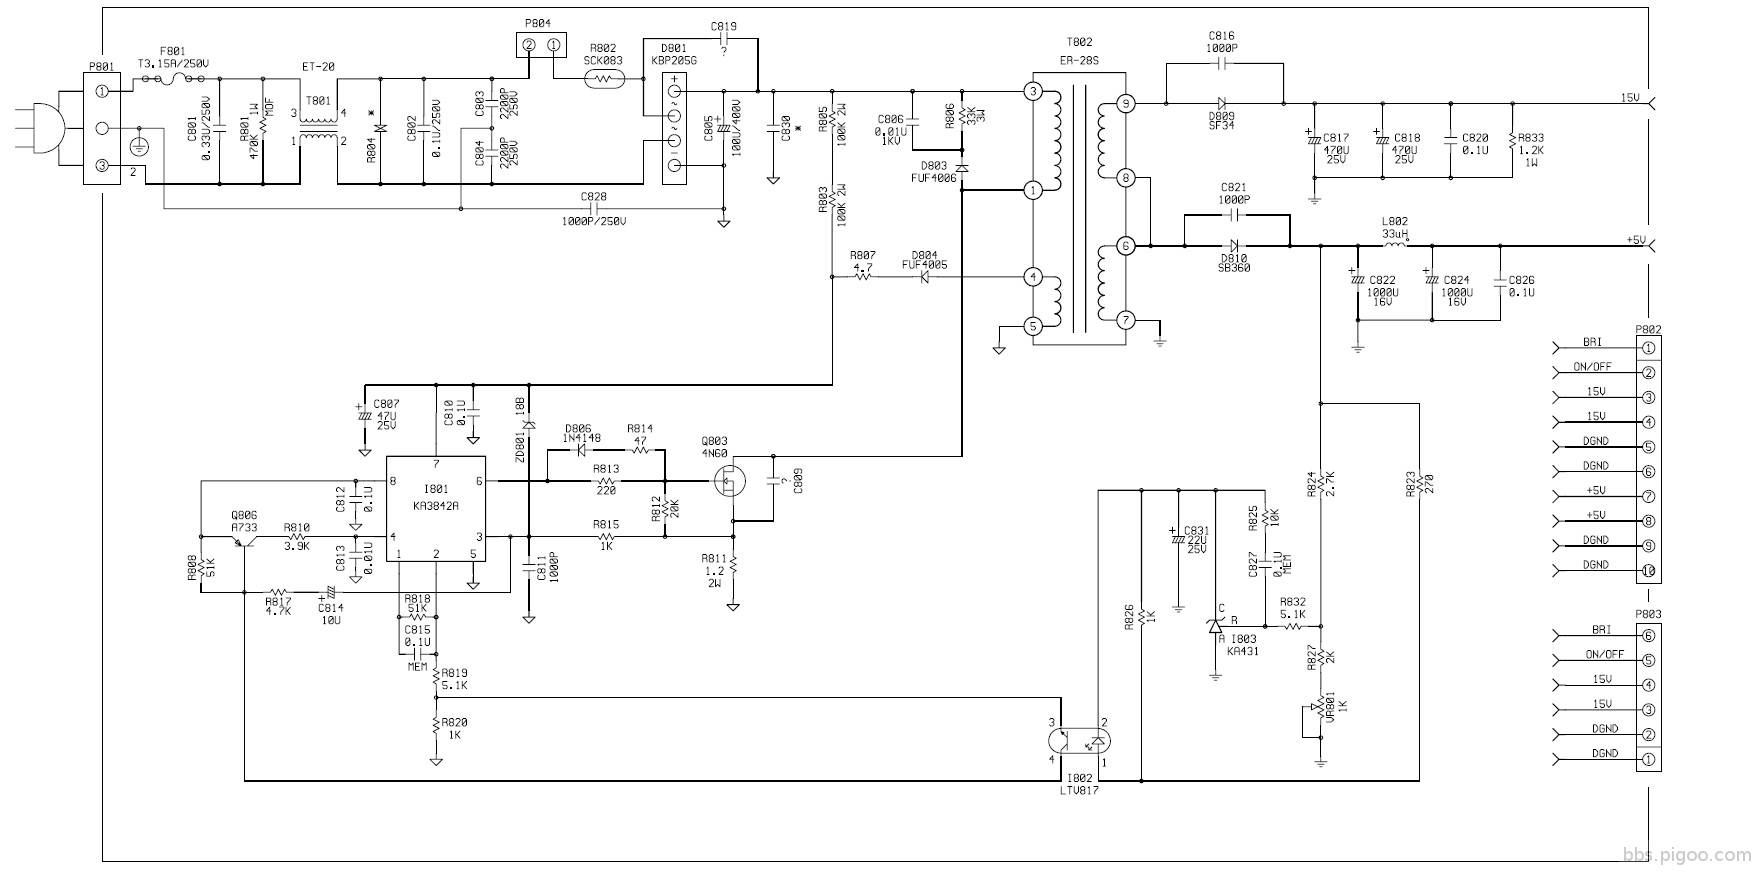 powerboard-diagram.jpg